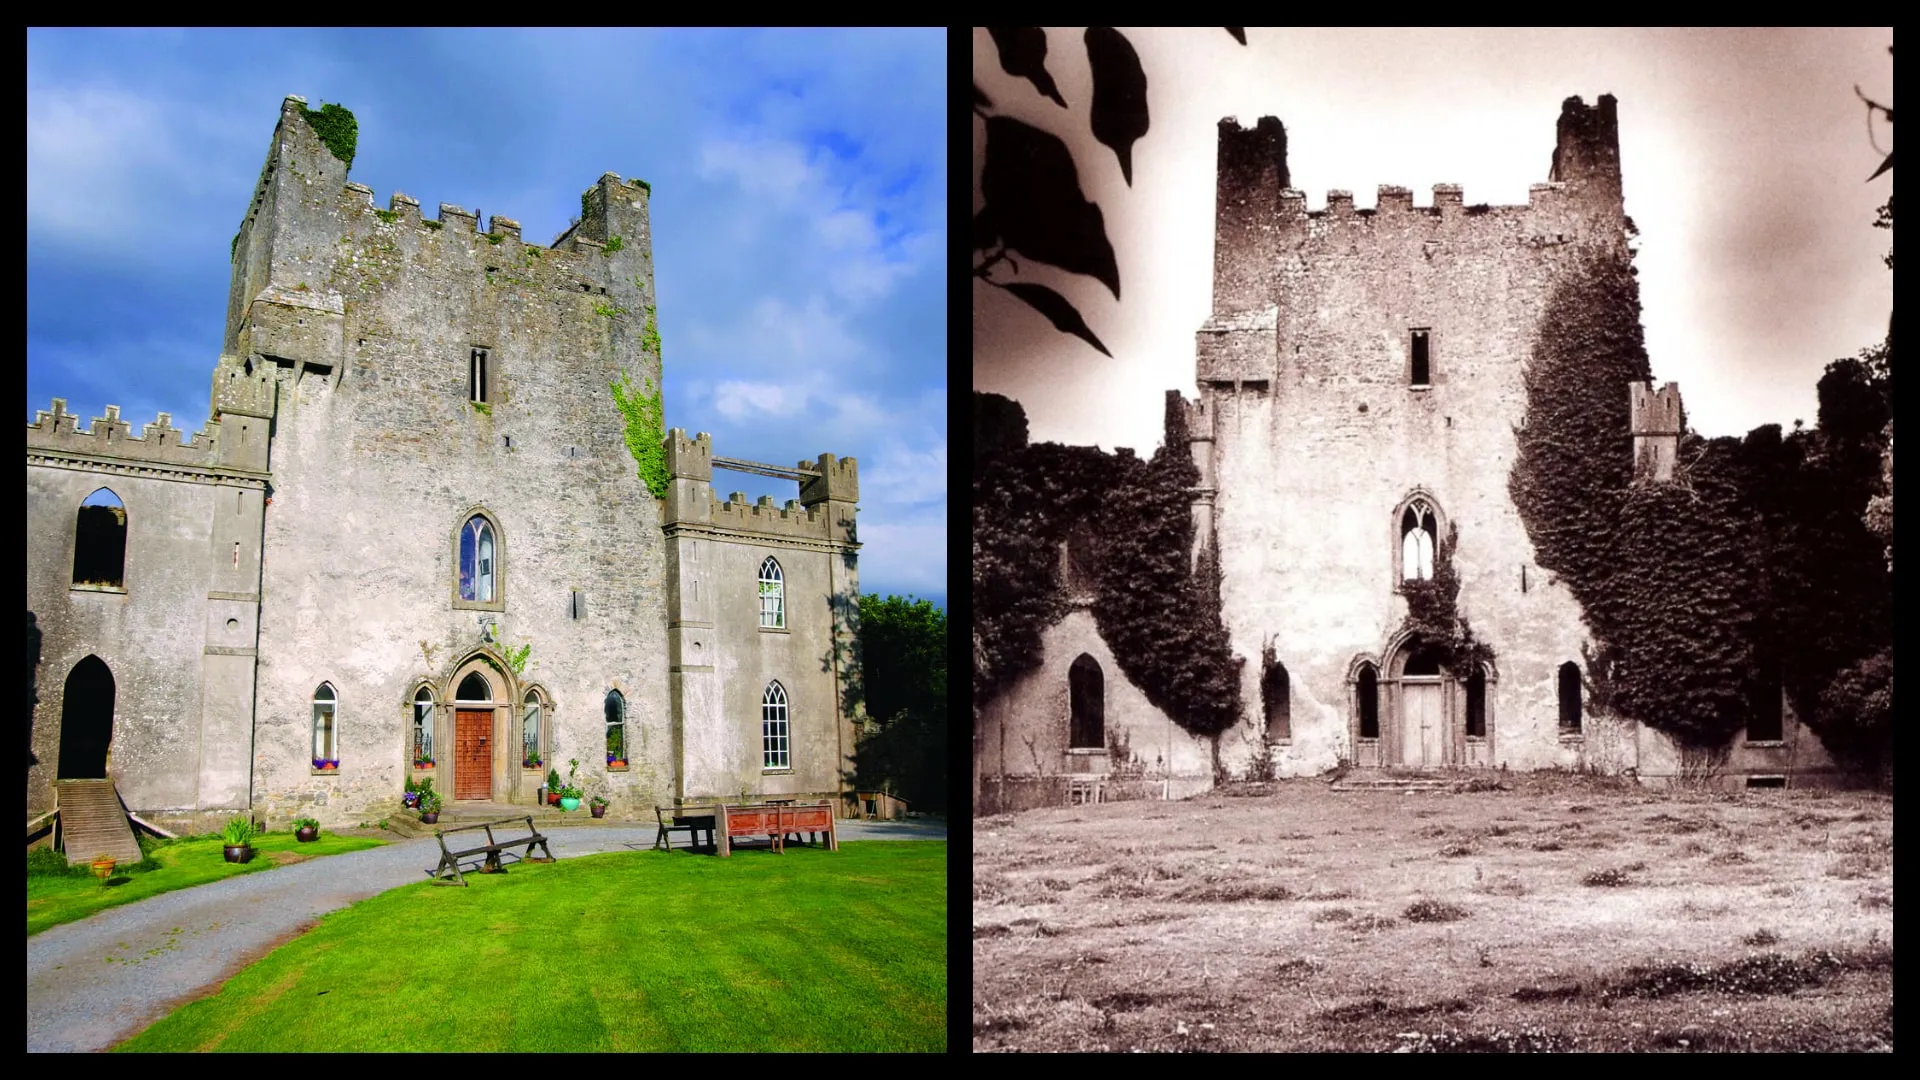 Leap Castle in Ireland